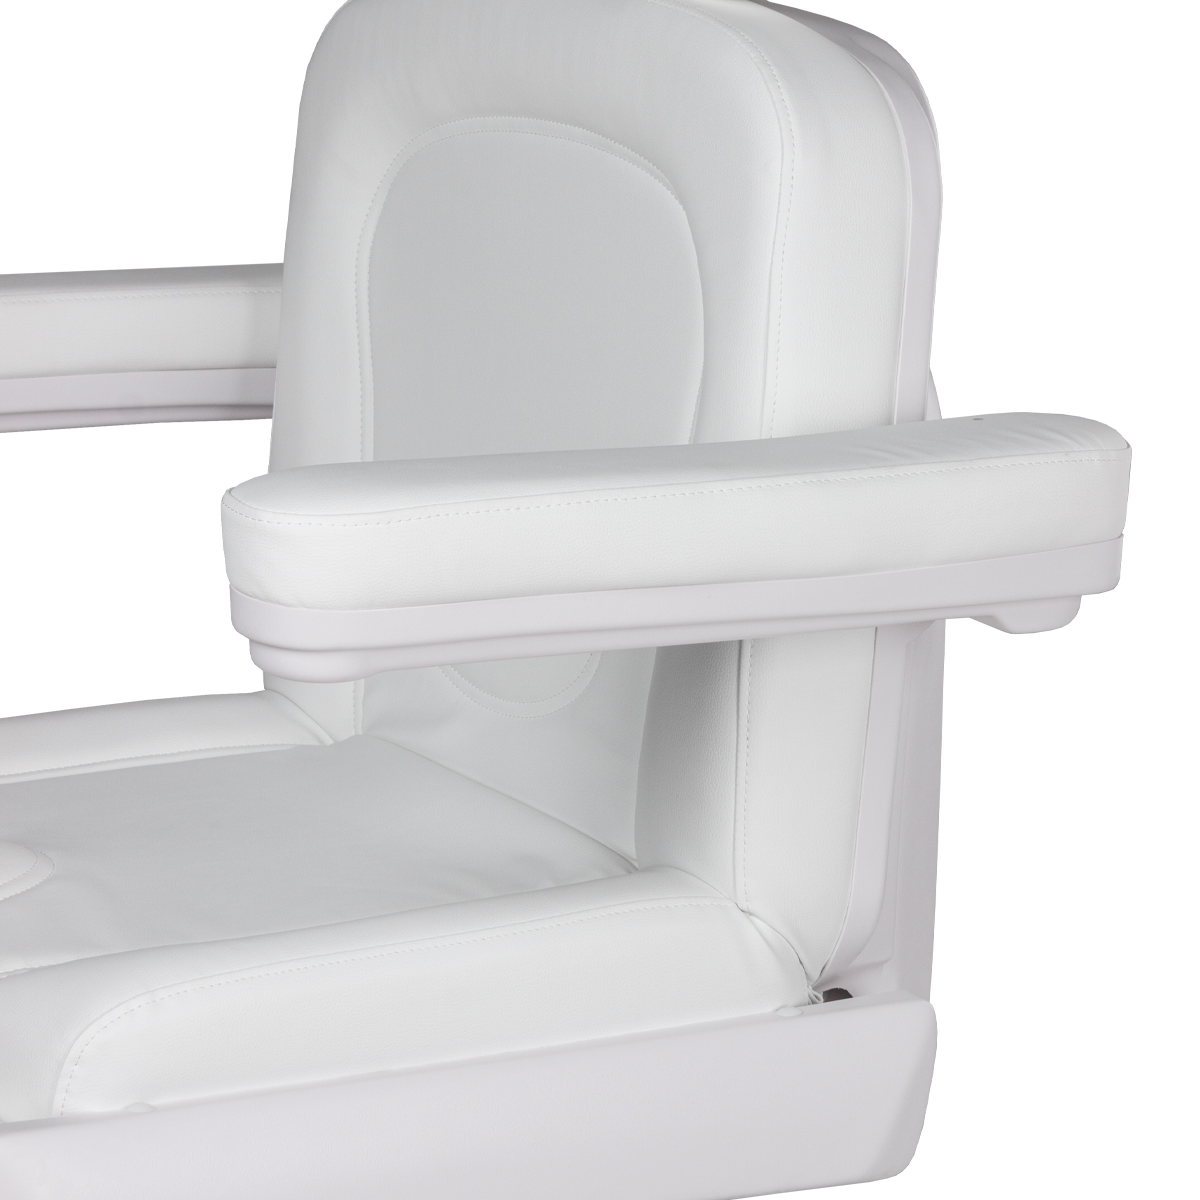 Педикюрное кресло МД-848-3А, 3 мотора